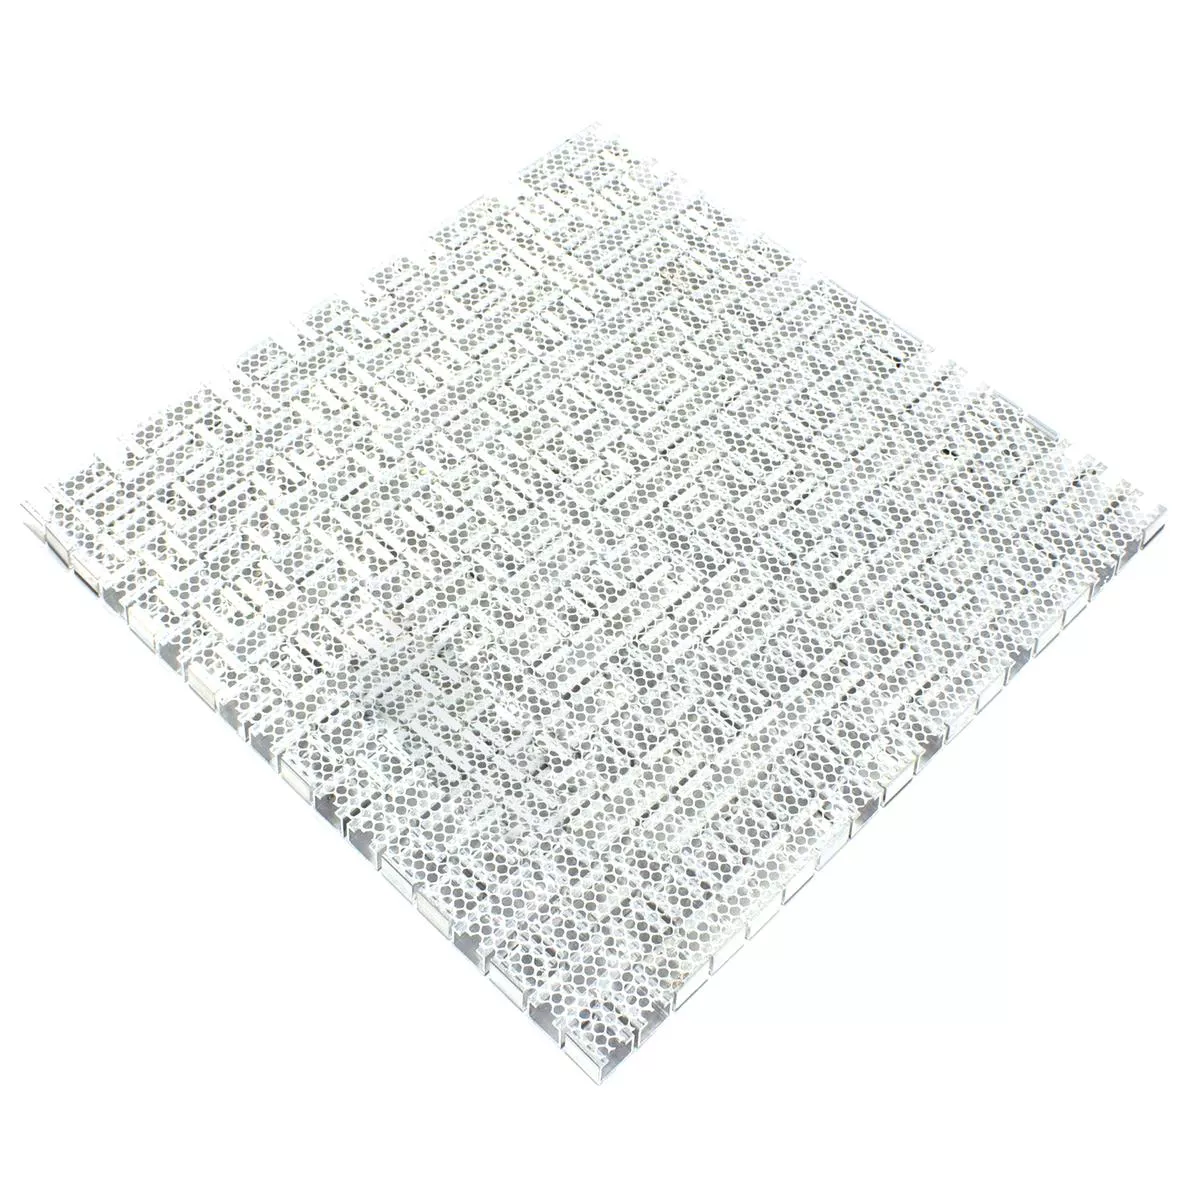 Aluminium Metall Mosaik Fliesen Montezuma Grau Silber Mix